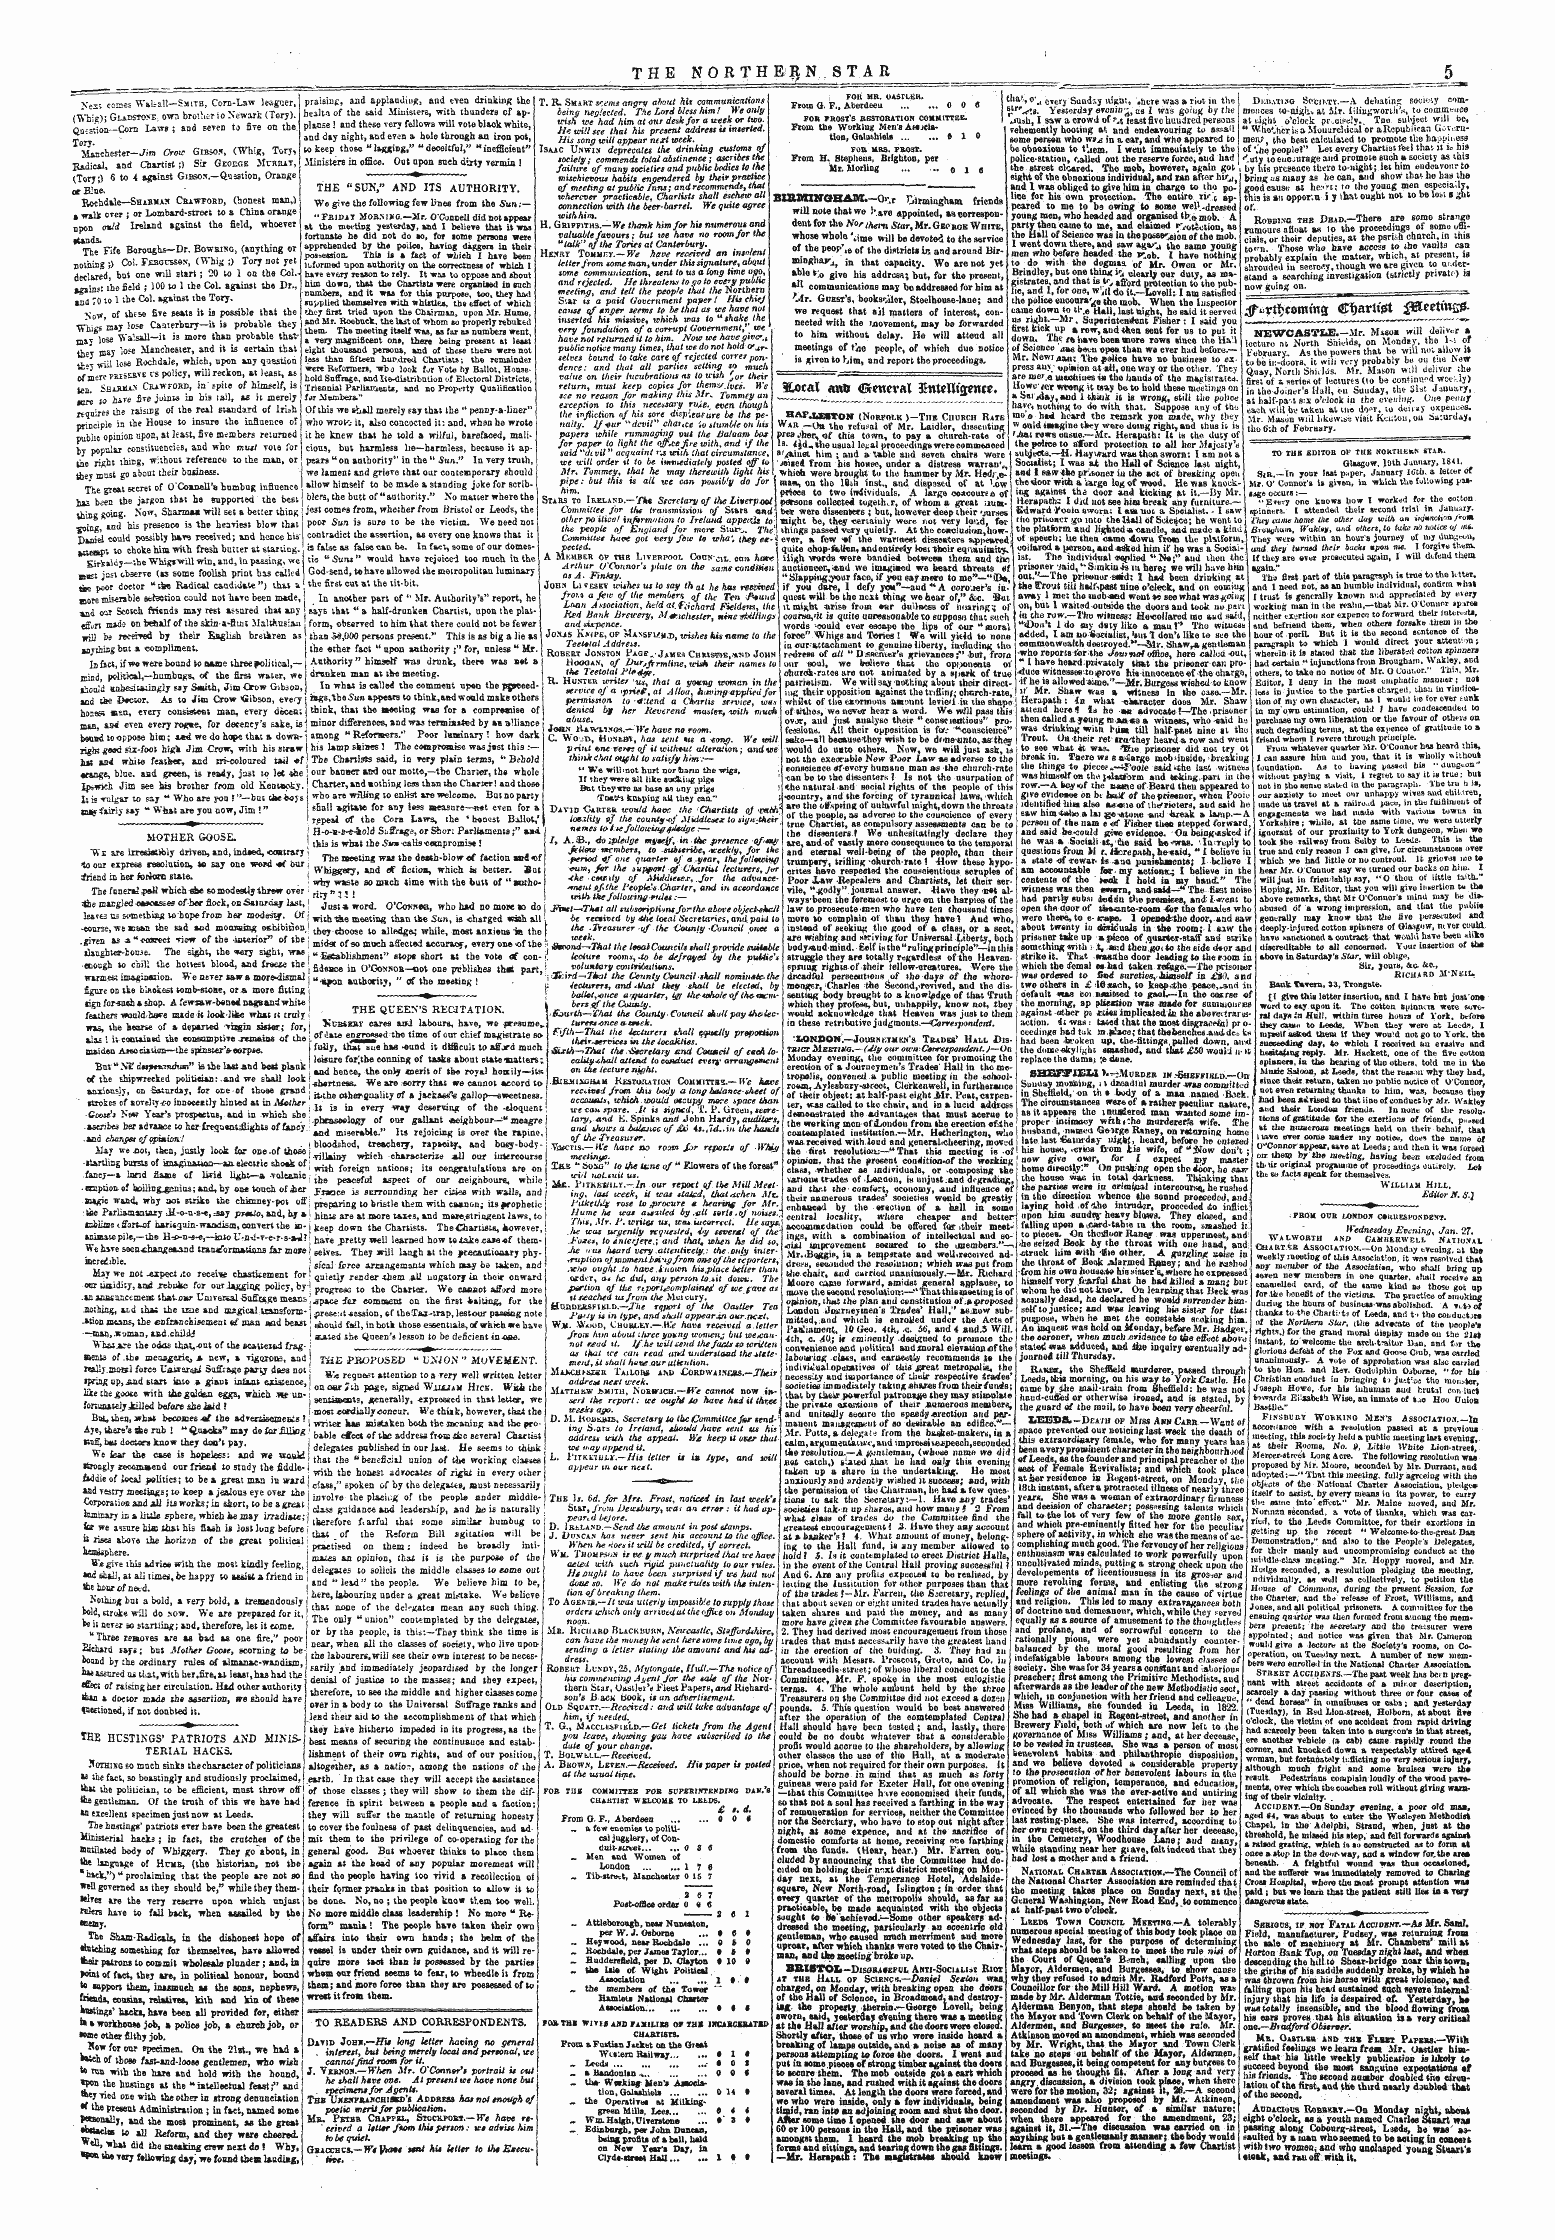 Northern Star (1837-1852): jS F Y, 5th edition - ^Vt^Comms Ctarttjrt ^Txix^'